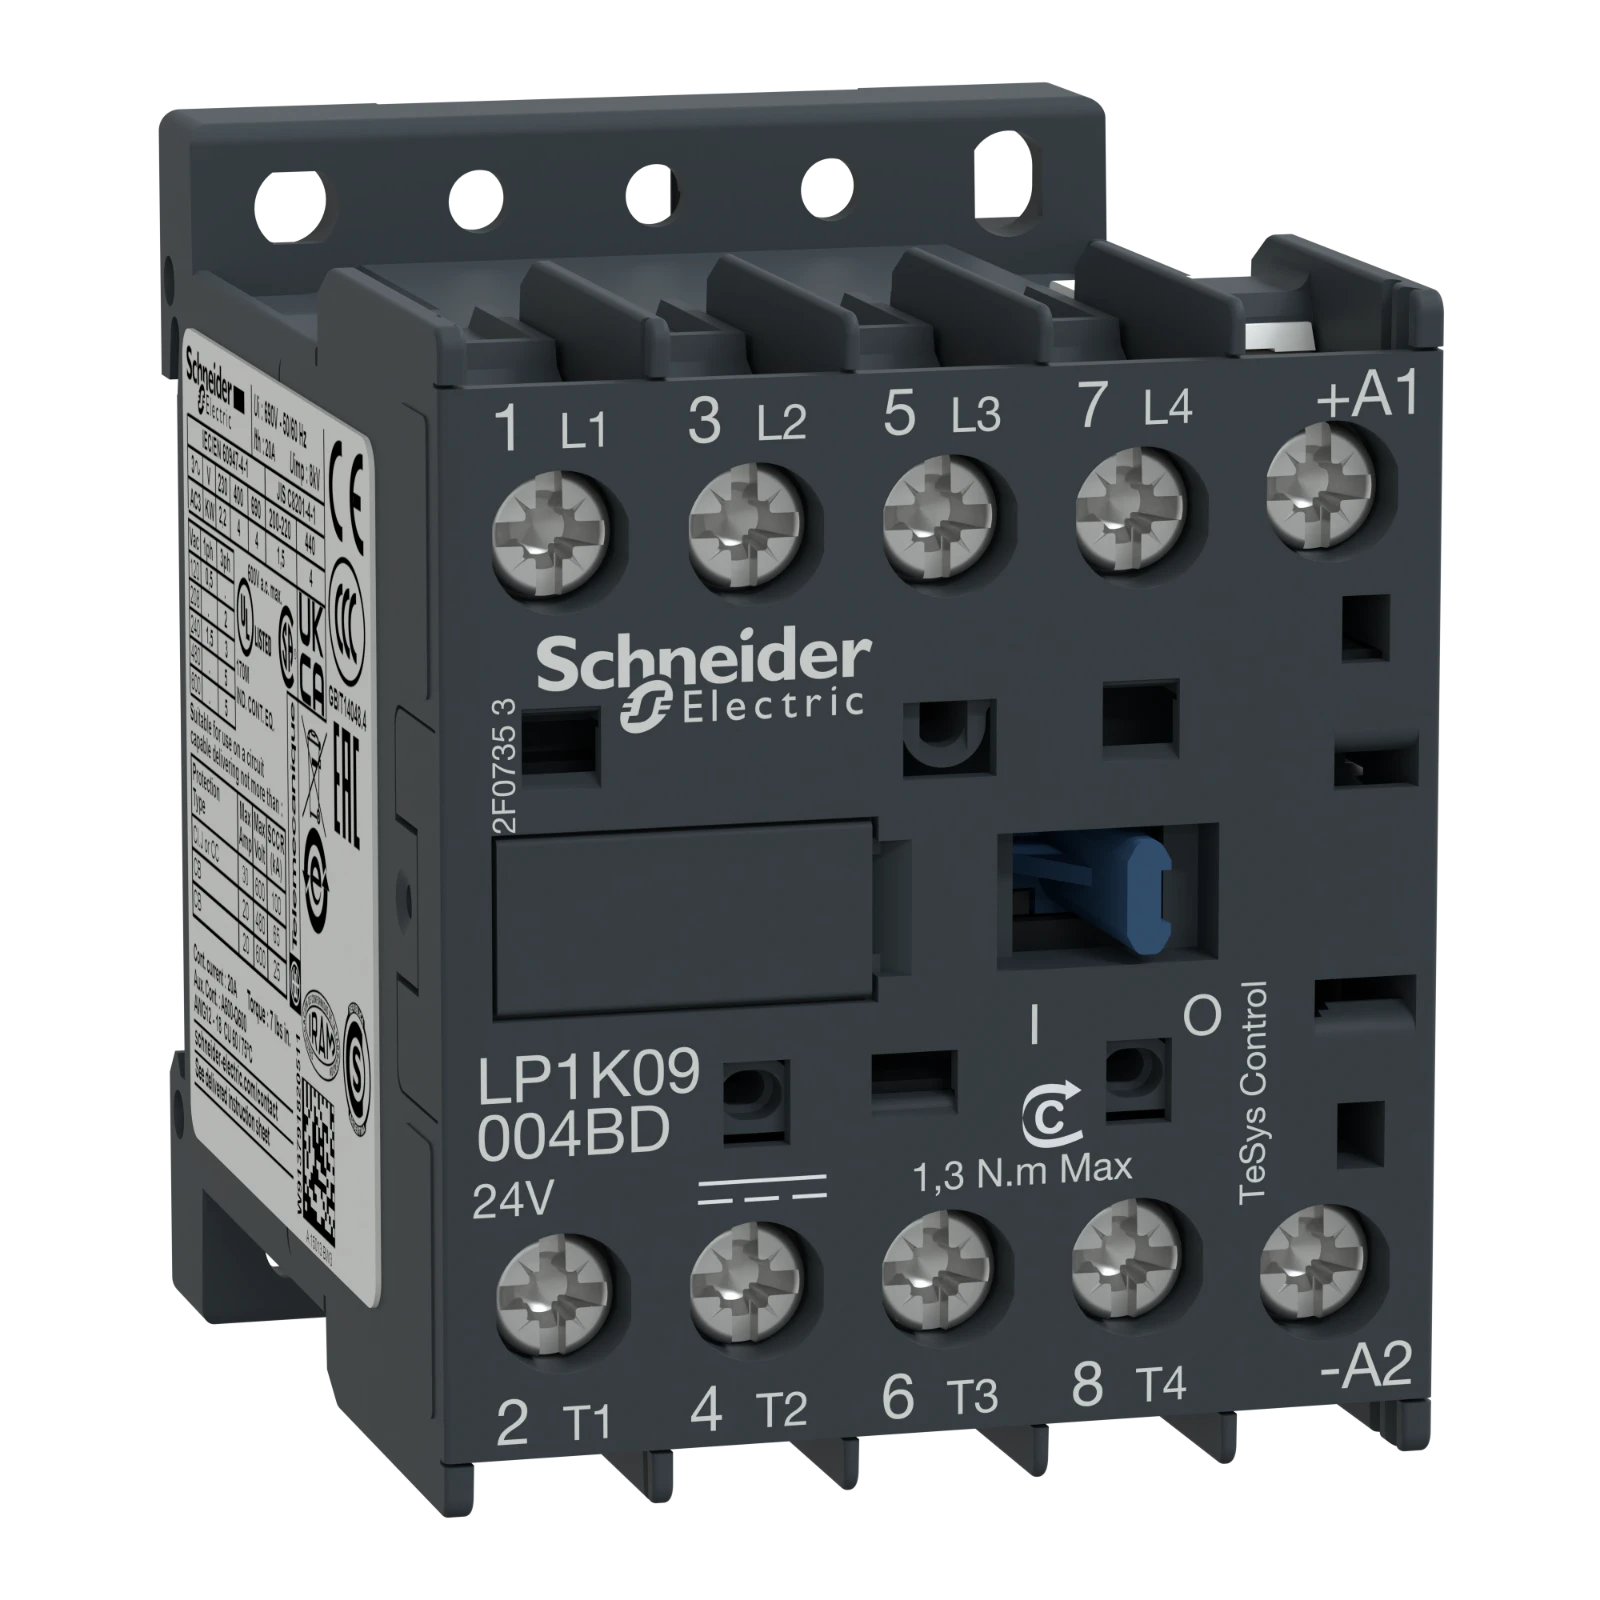 2339660 - Schneider Electric LP1K09004FD